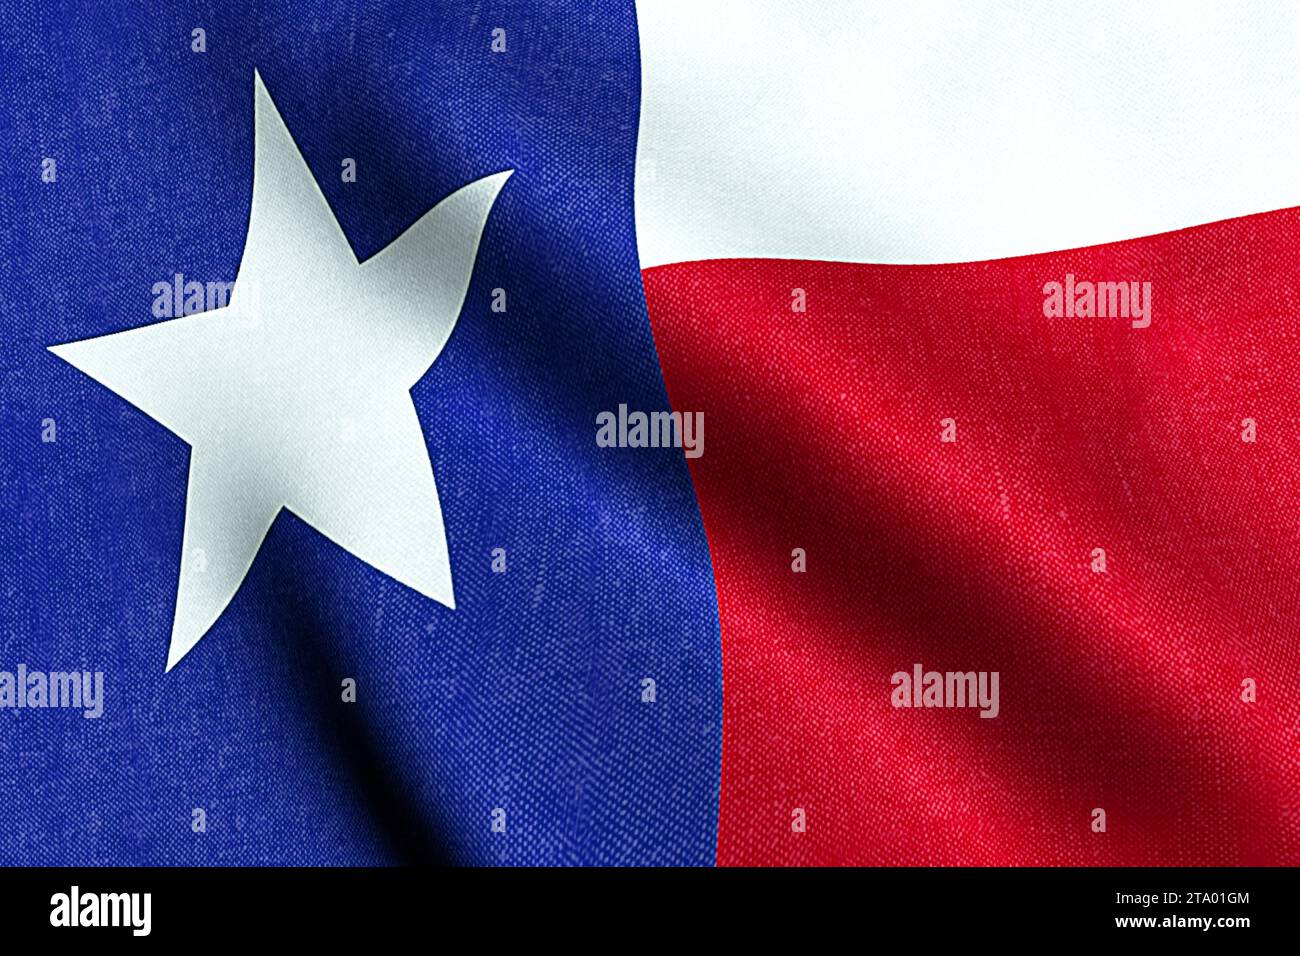 ondulation texture de tissu du drapeau avec la couleur bleue et rouge de la nation texas, nation des états-unis, états-unis Banque D'Images